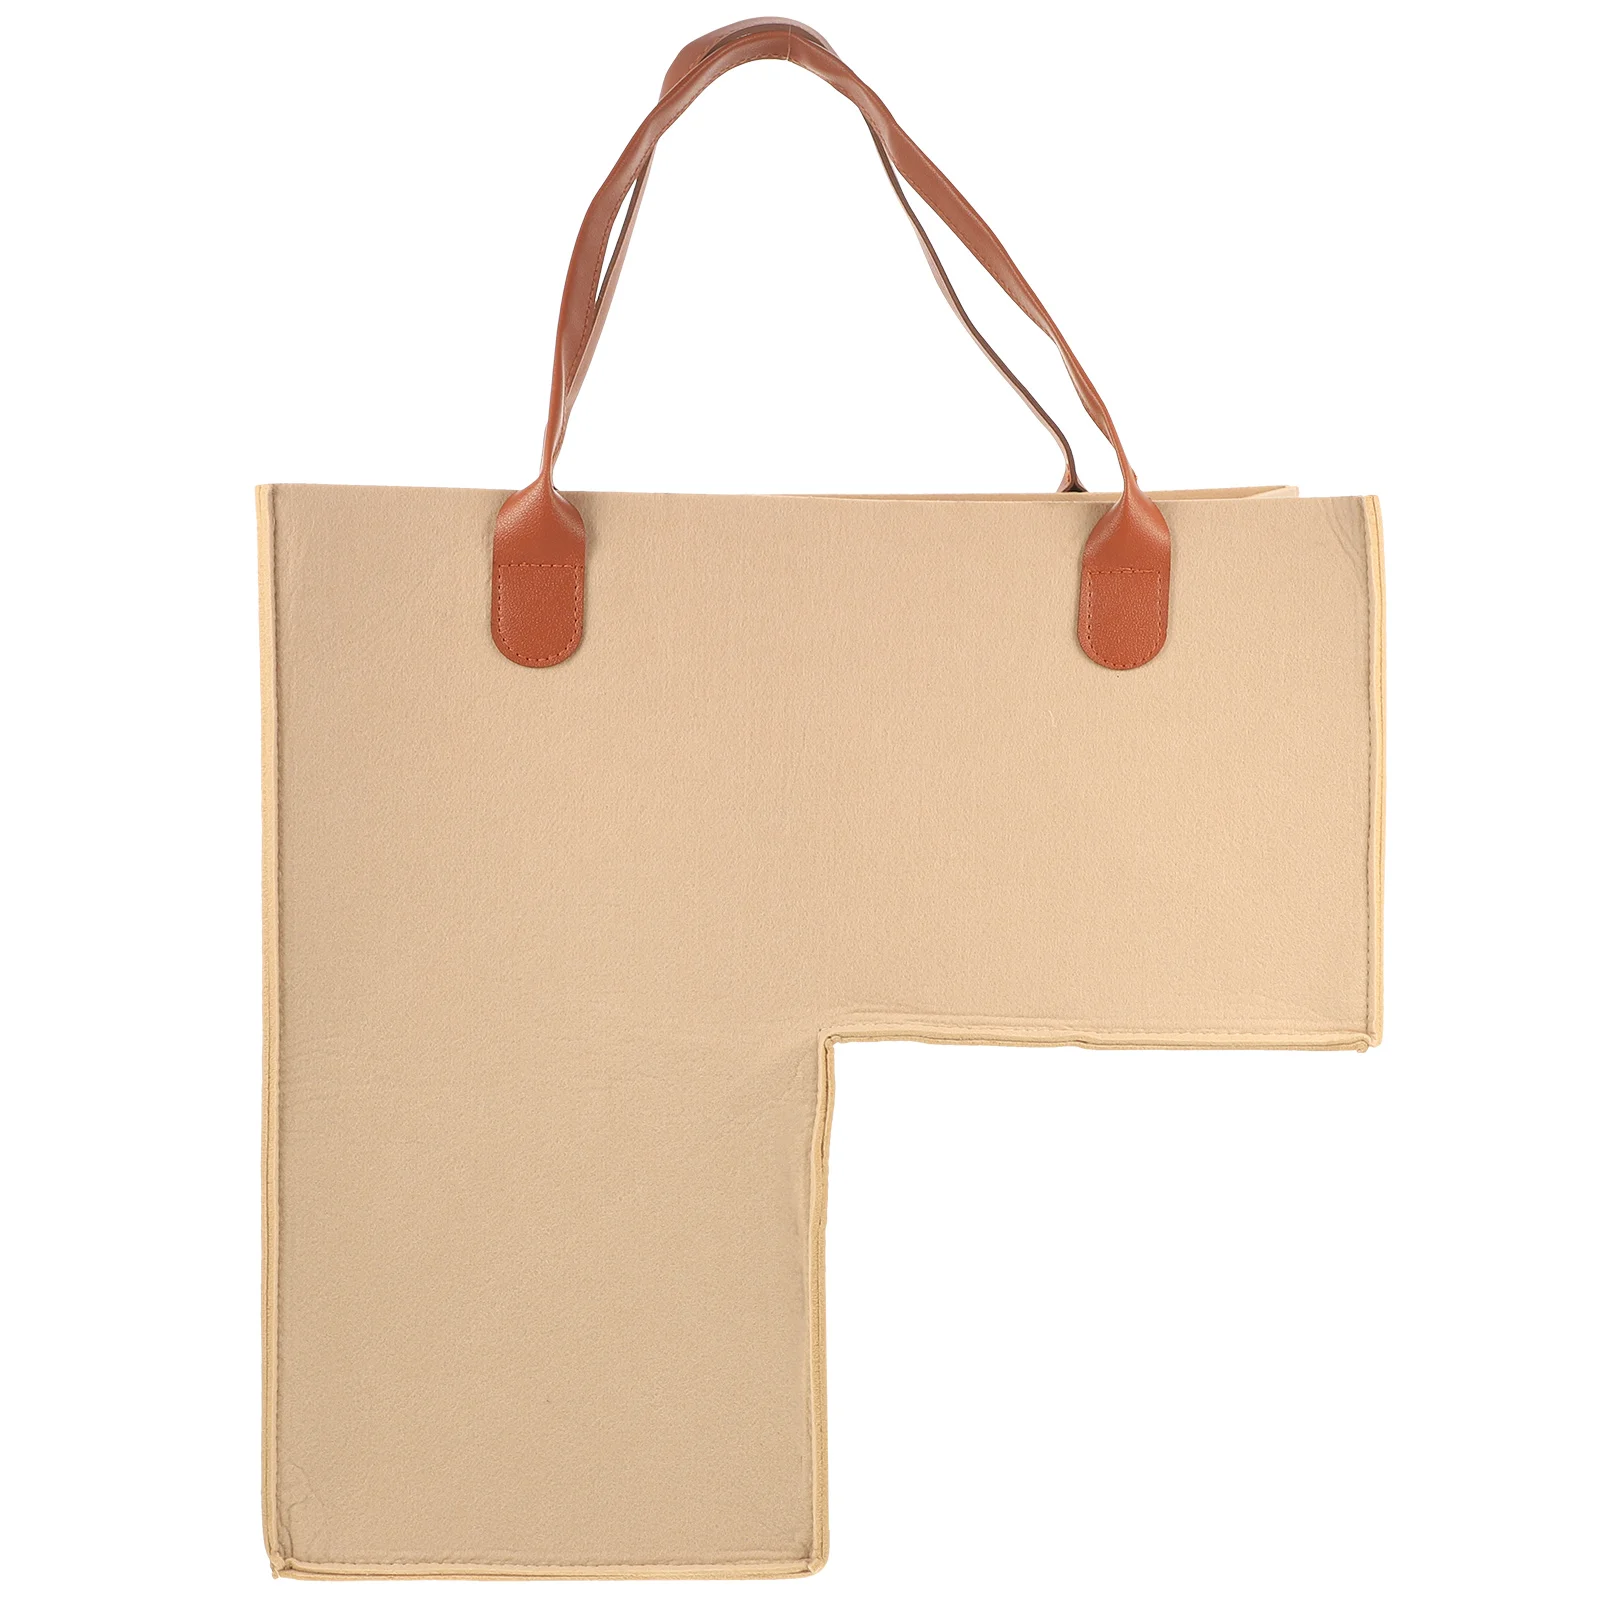 

Вместительная хозяйственная сумка-тоут для белья для домашнего использования, тканевая корзина, корзина, Органайзер